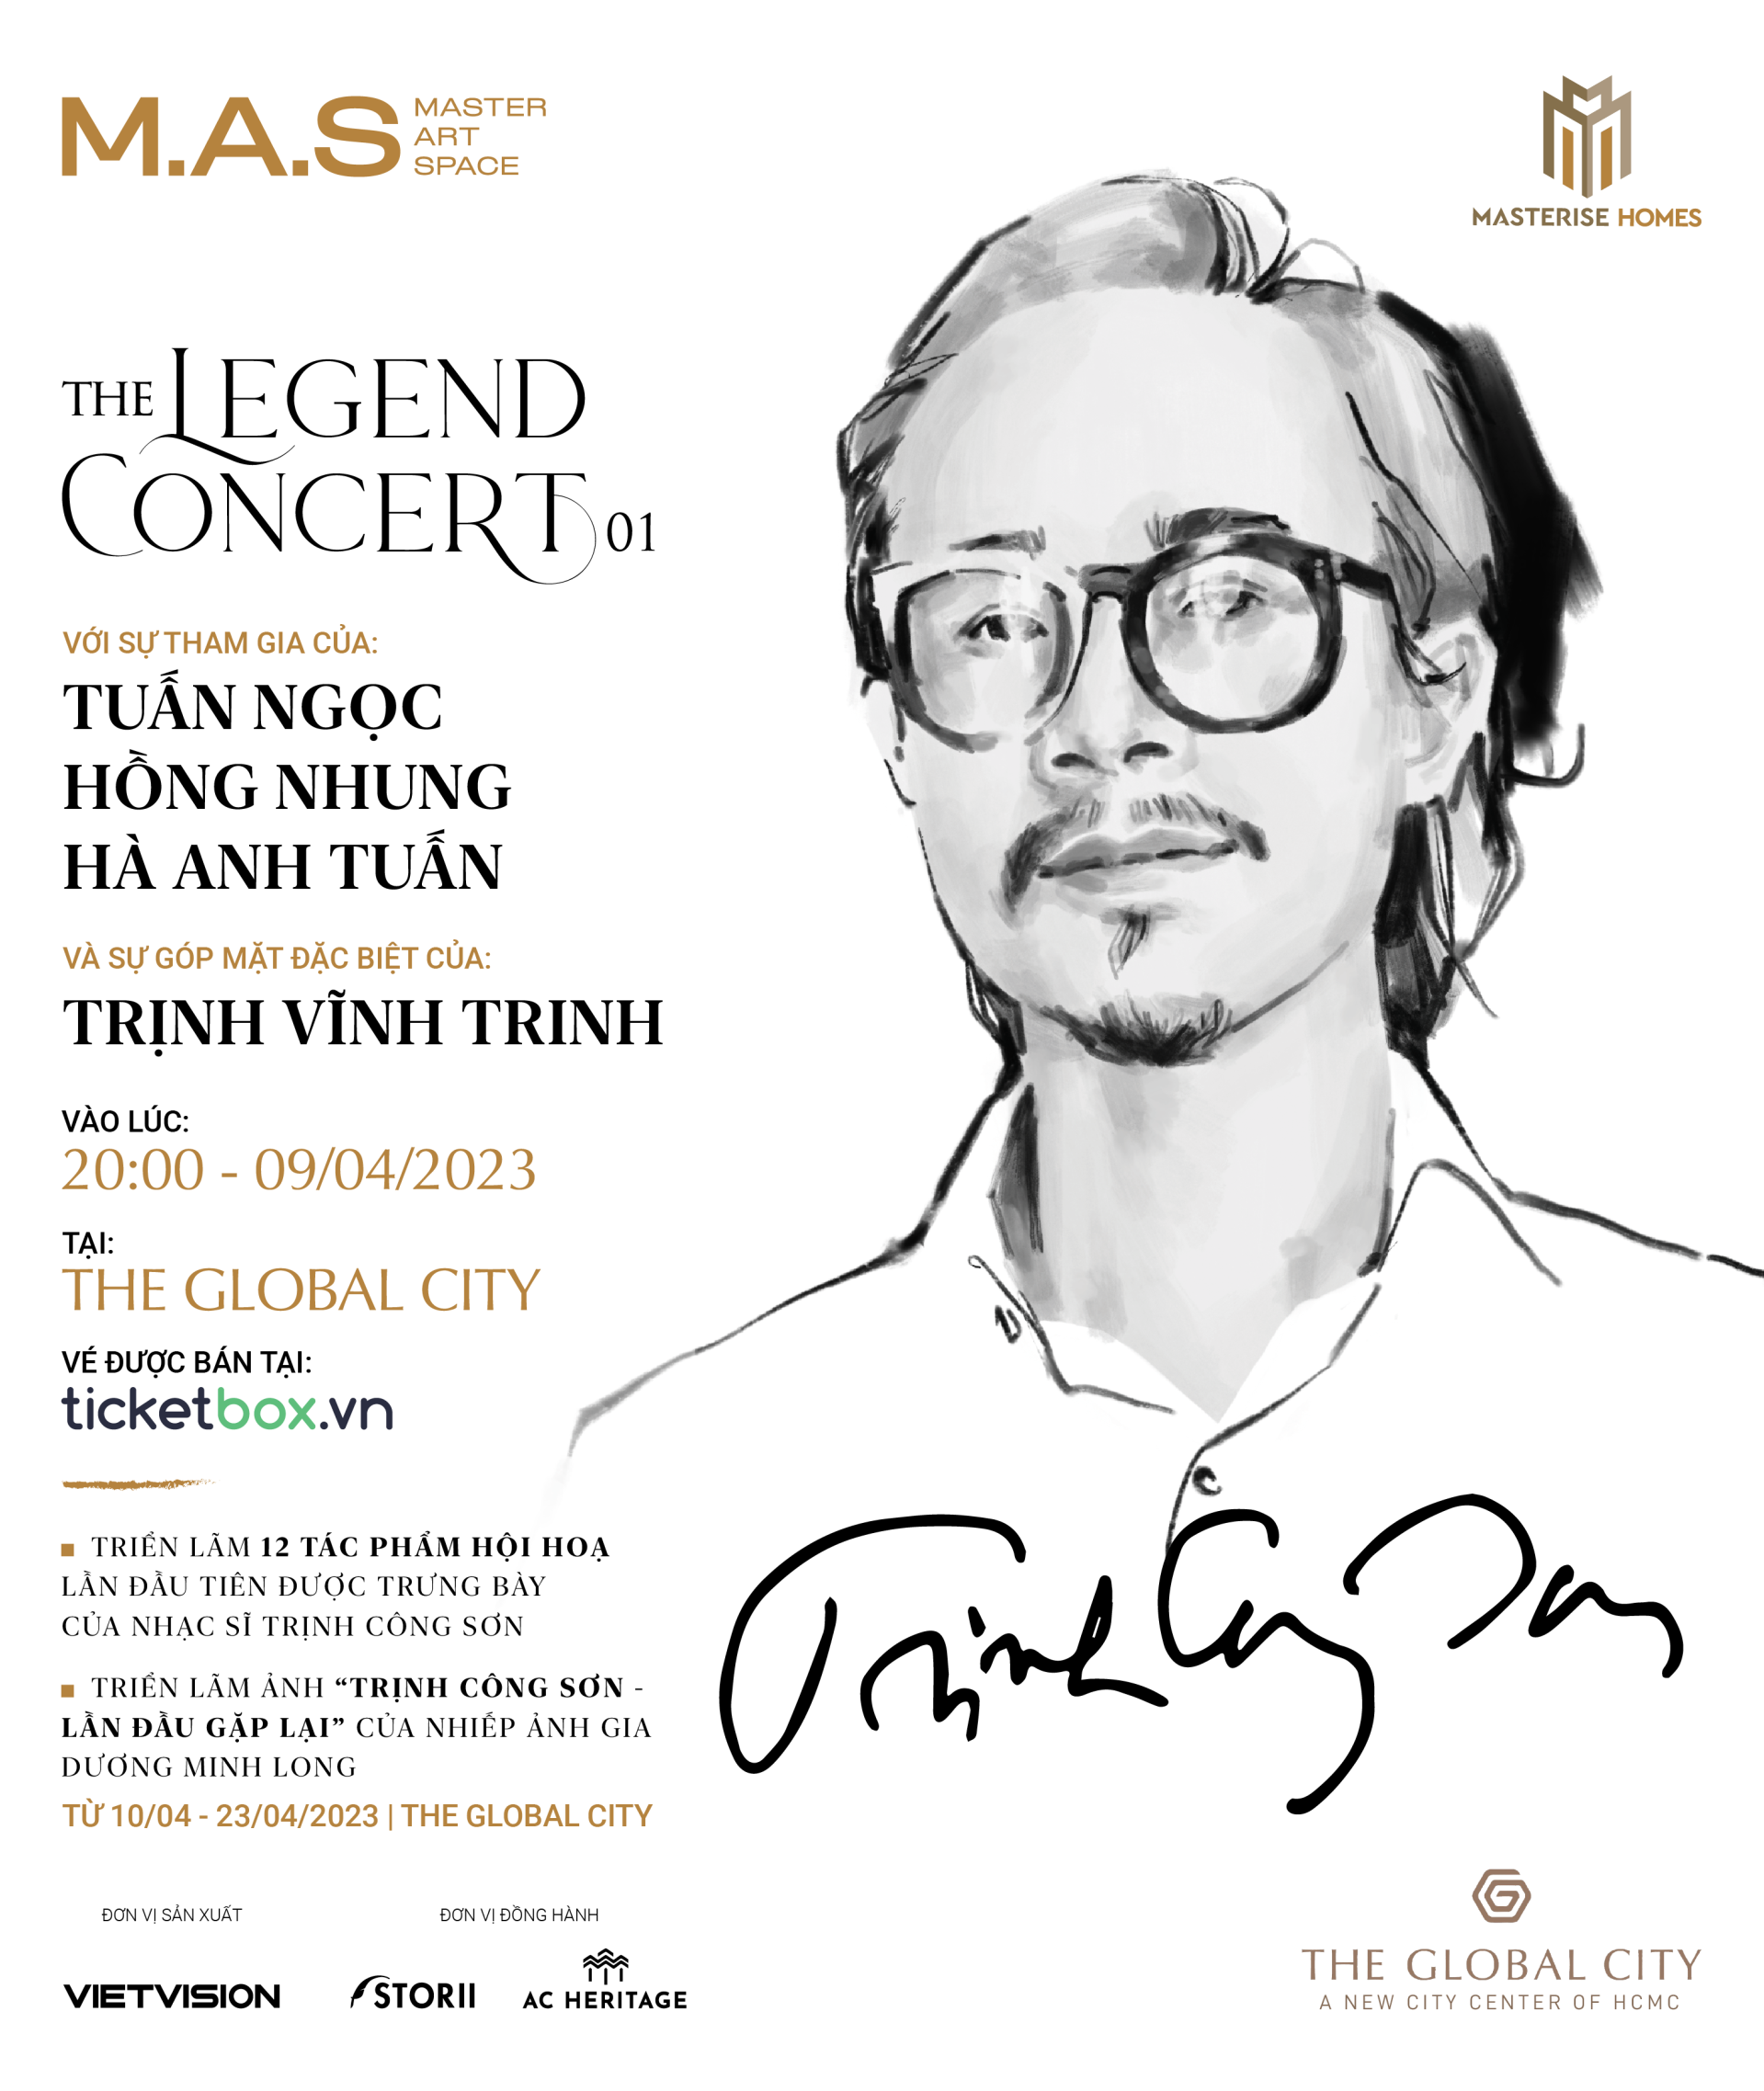 Đêm nhạc The Legend Concert – Trịnh Công Sơn lần đầu tiên diễn ra tại trung tâm mới The Global City - ảnh 1